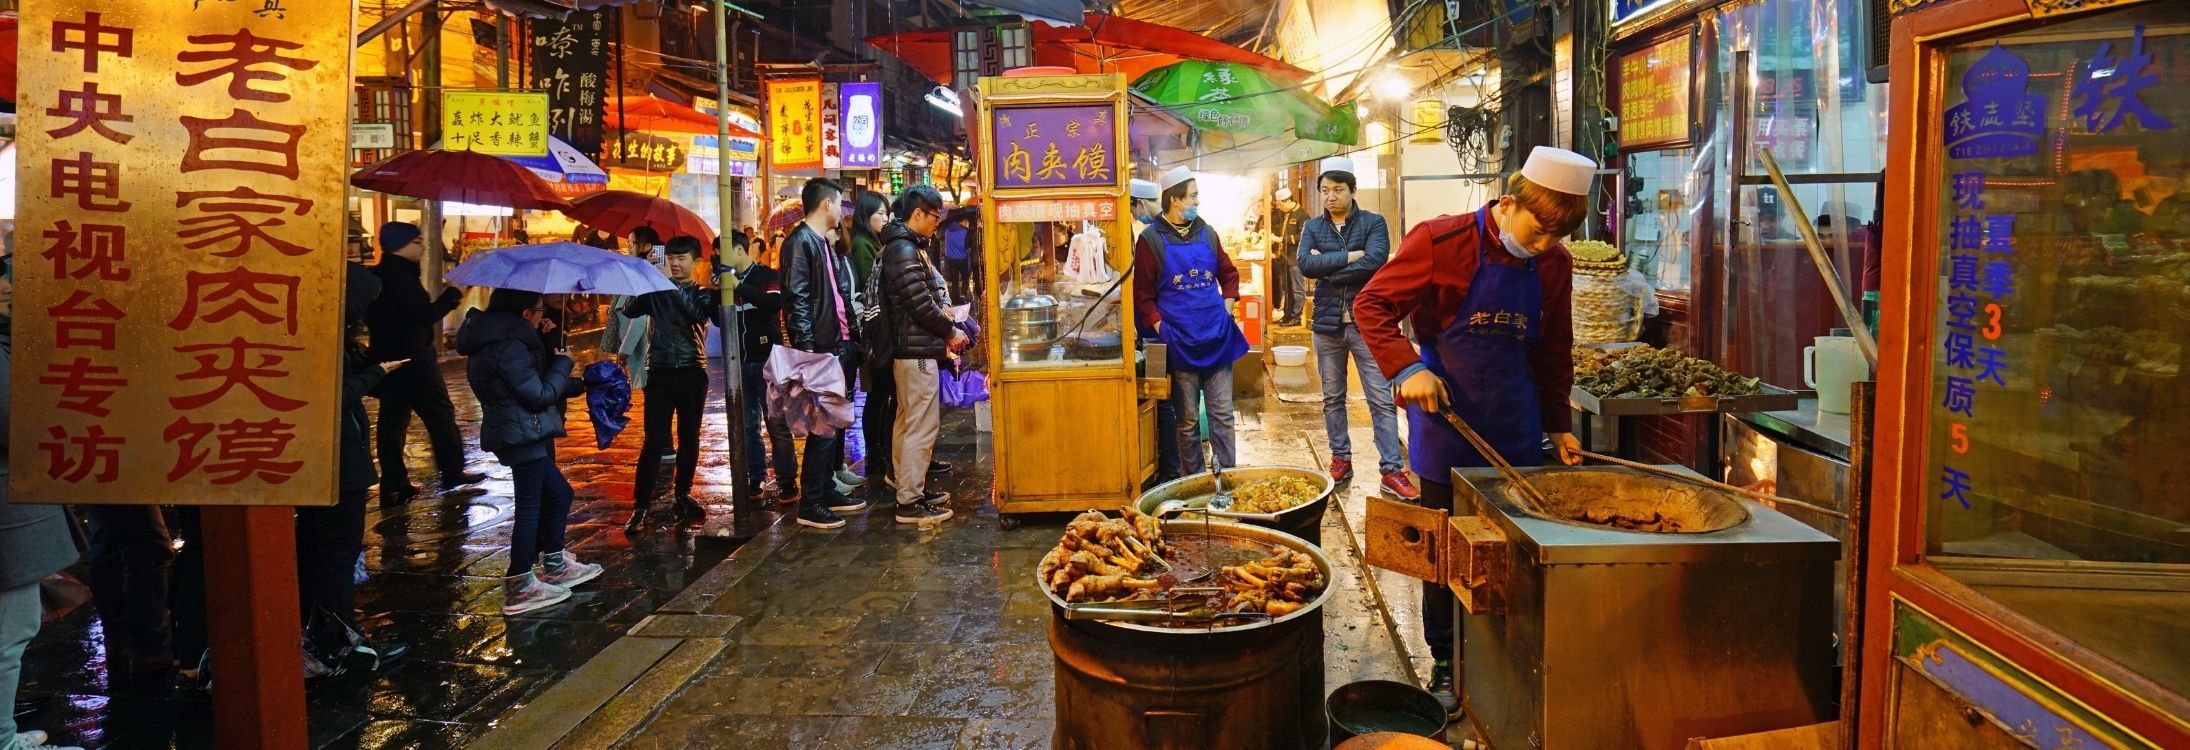 Xi’an evening food tour by Tuk Tuk, China